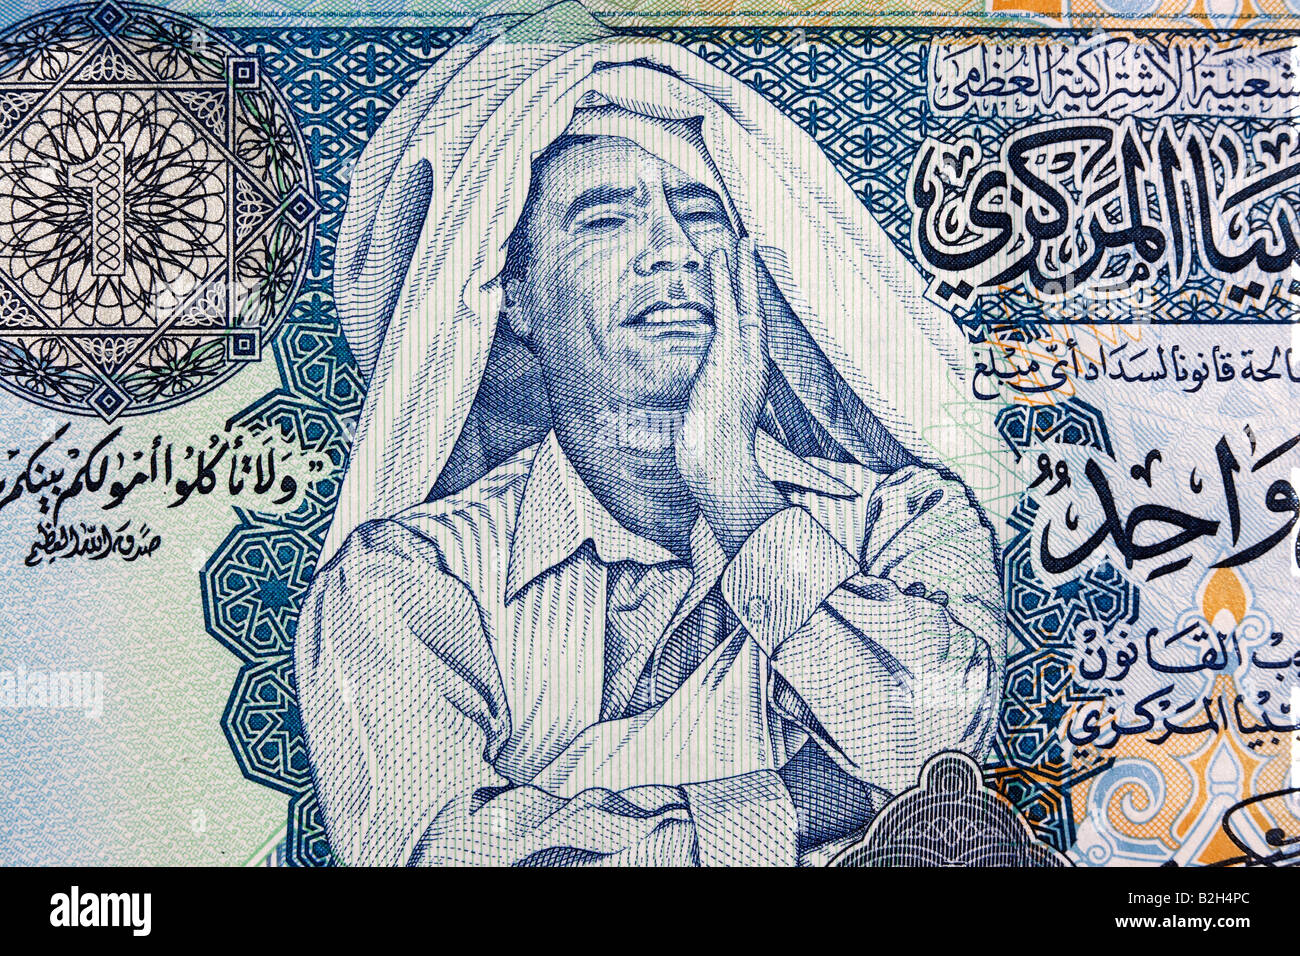 Image du Président libyen Kadhafi sur un dinar Bank Note Banque D'Images